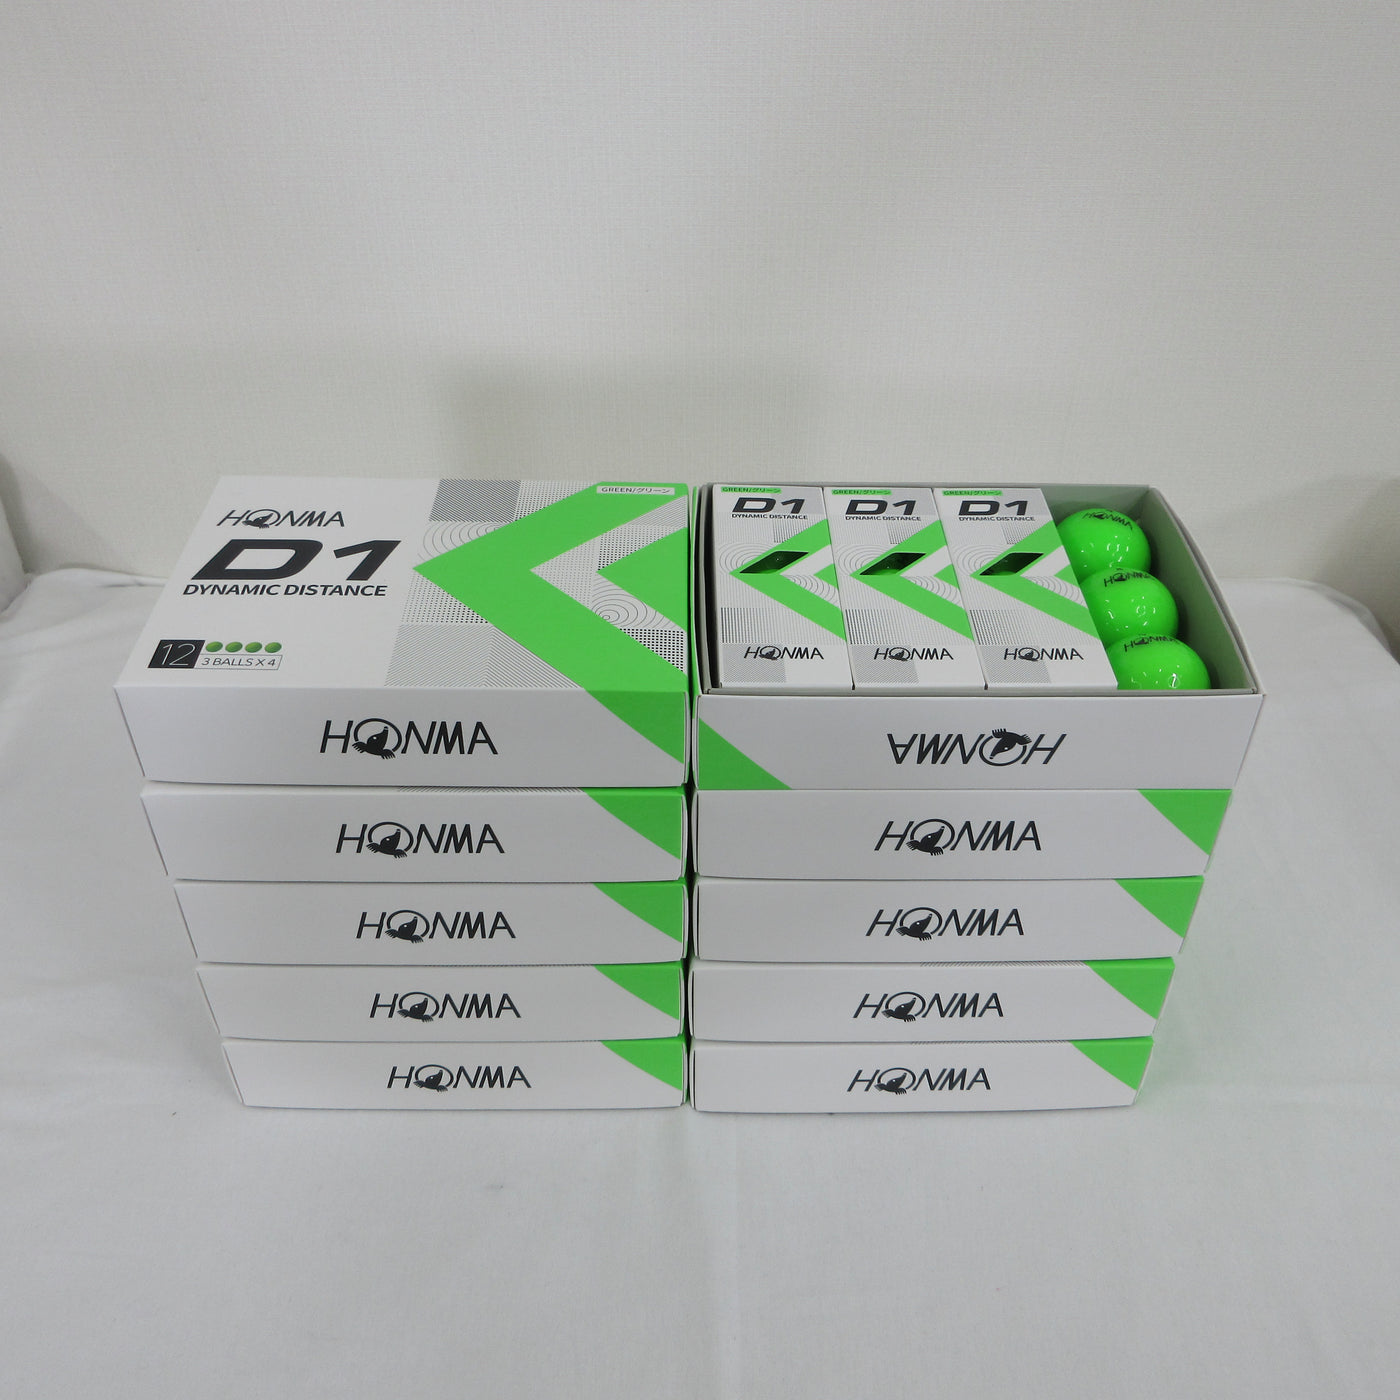 HONMA D1 Ball BT2201 Green color 10 dozen